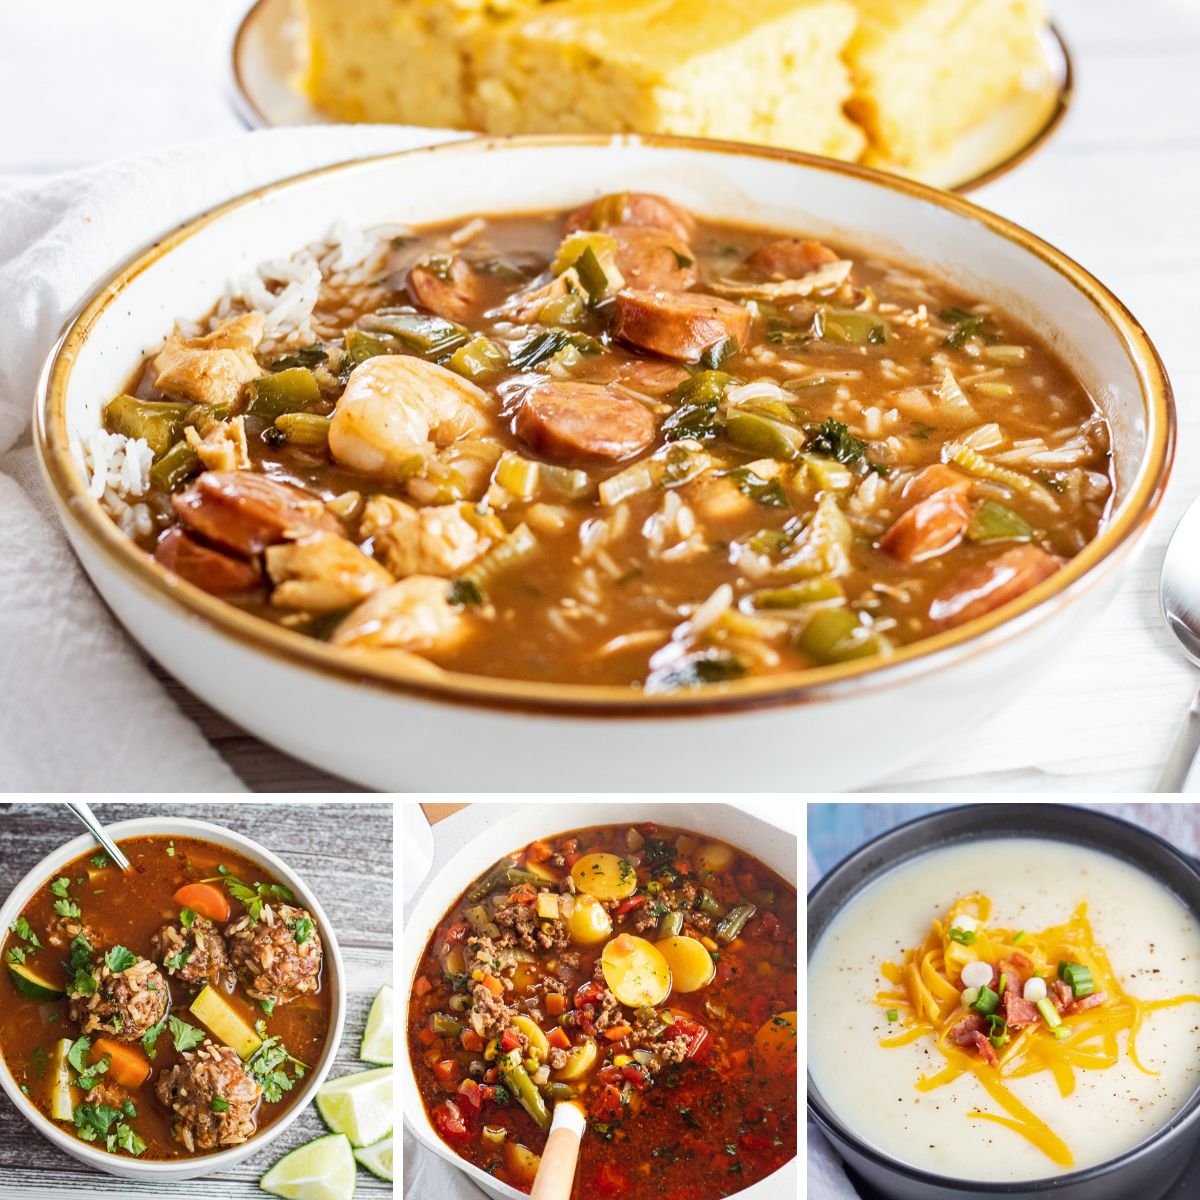 L'immagine del collage delle migliori ricette di zuppa autunnale con 4 comode zuppe di cibo confortevole con cui riscaldarsi.